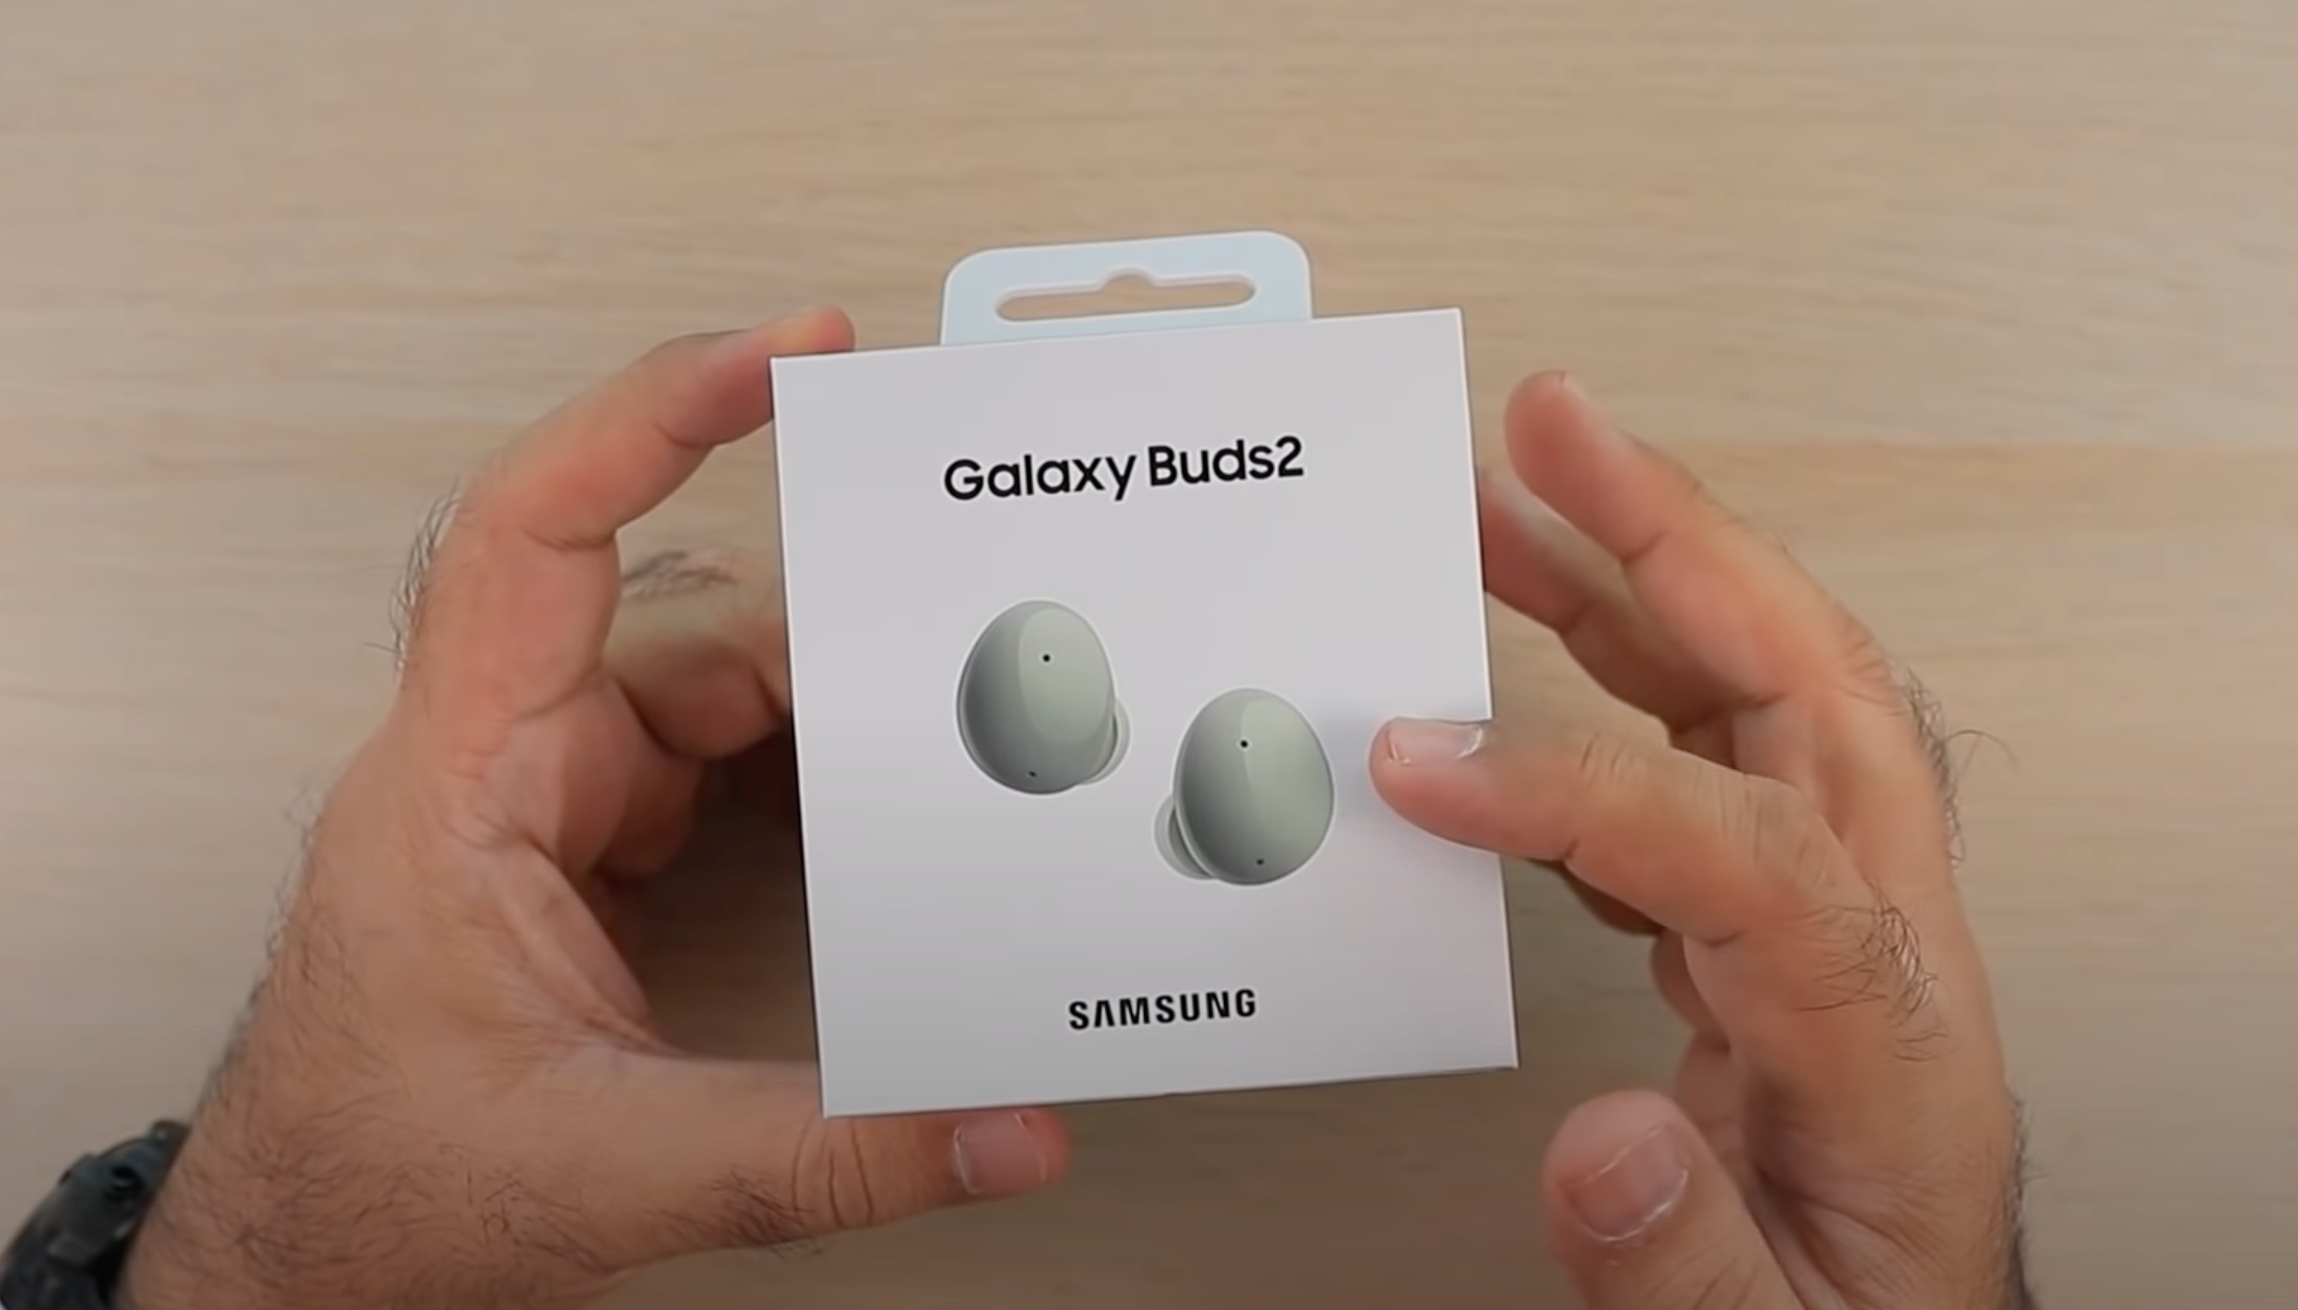 W serwisie YouTube pojawiło się wideo pokazujące unboxing słuchawek Samsung Galaxy Buds 2 TWS